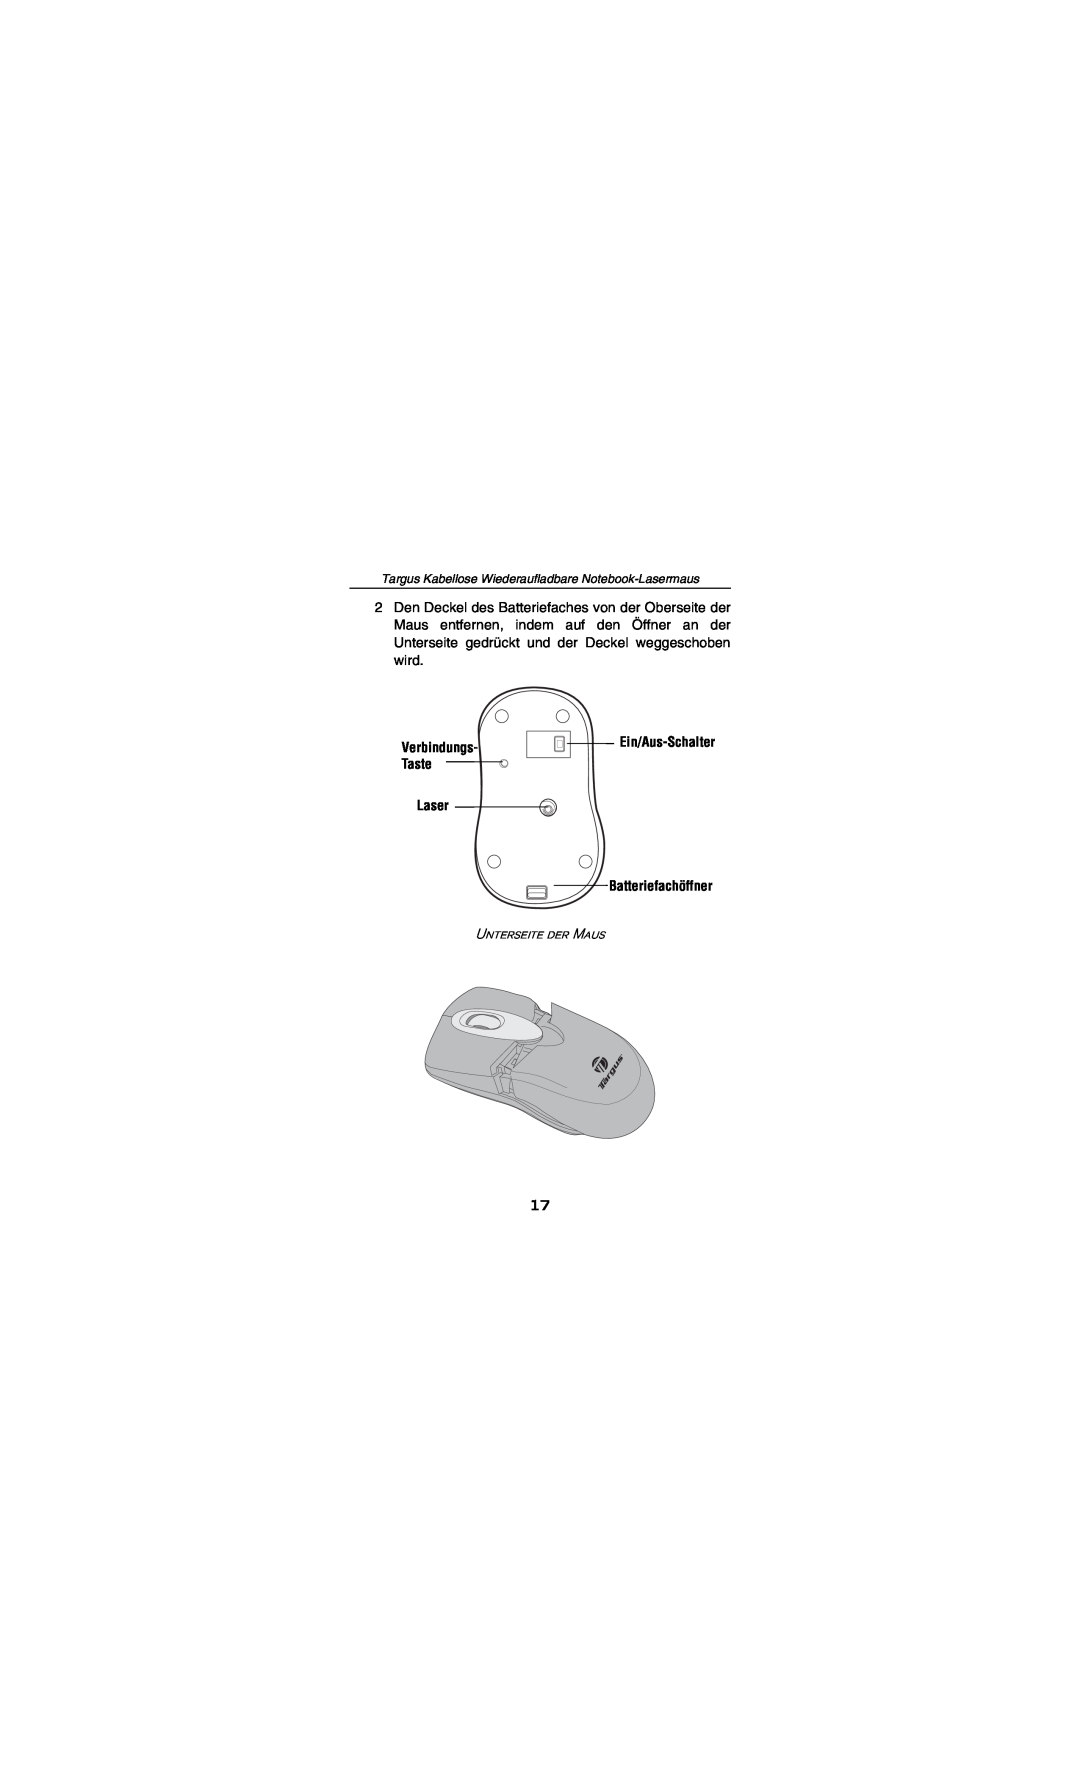 Targus AMW15EU specifications Verbindungs- Taste, Ein/Aus-Schalter, Laser Batteriefachöffner, Unterseite der Maus 